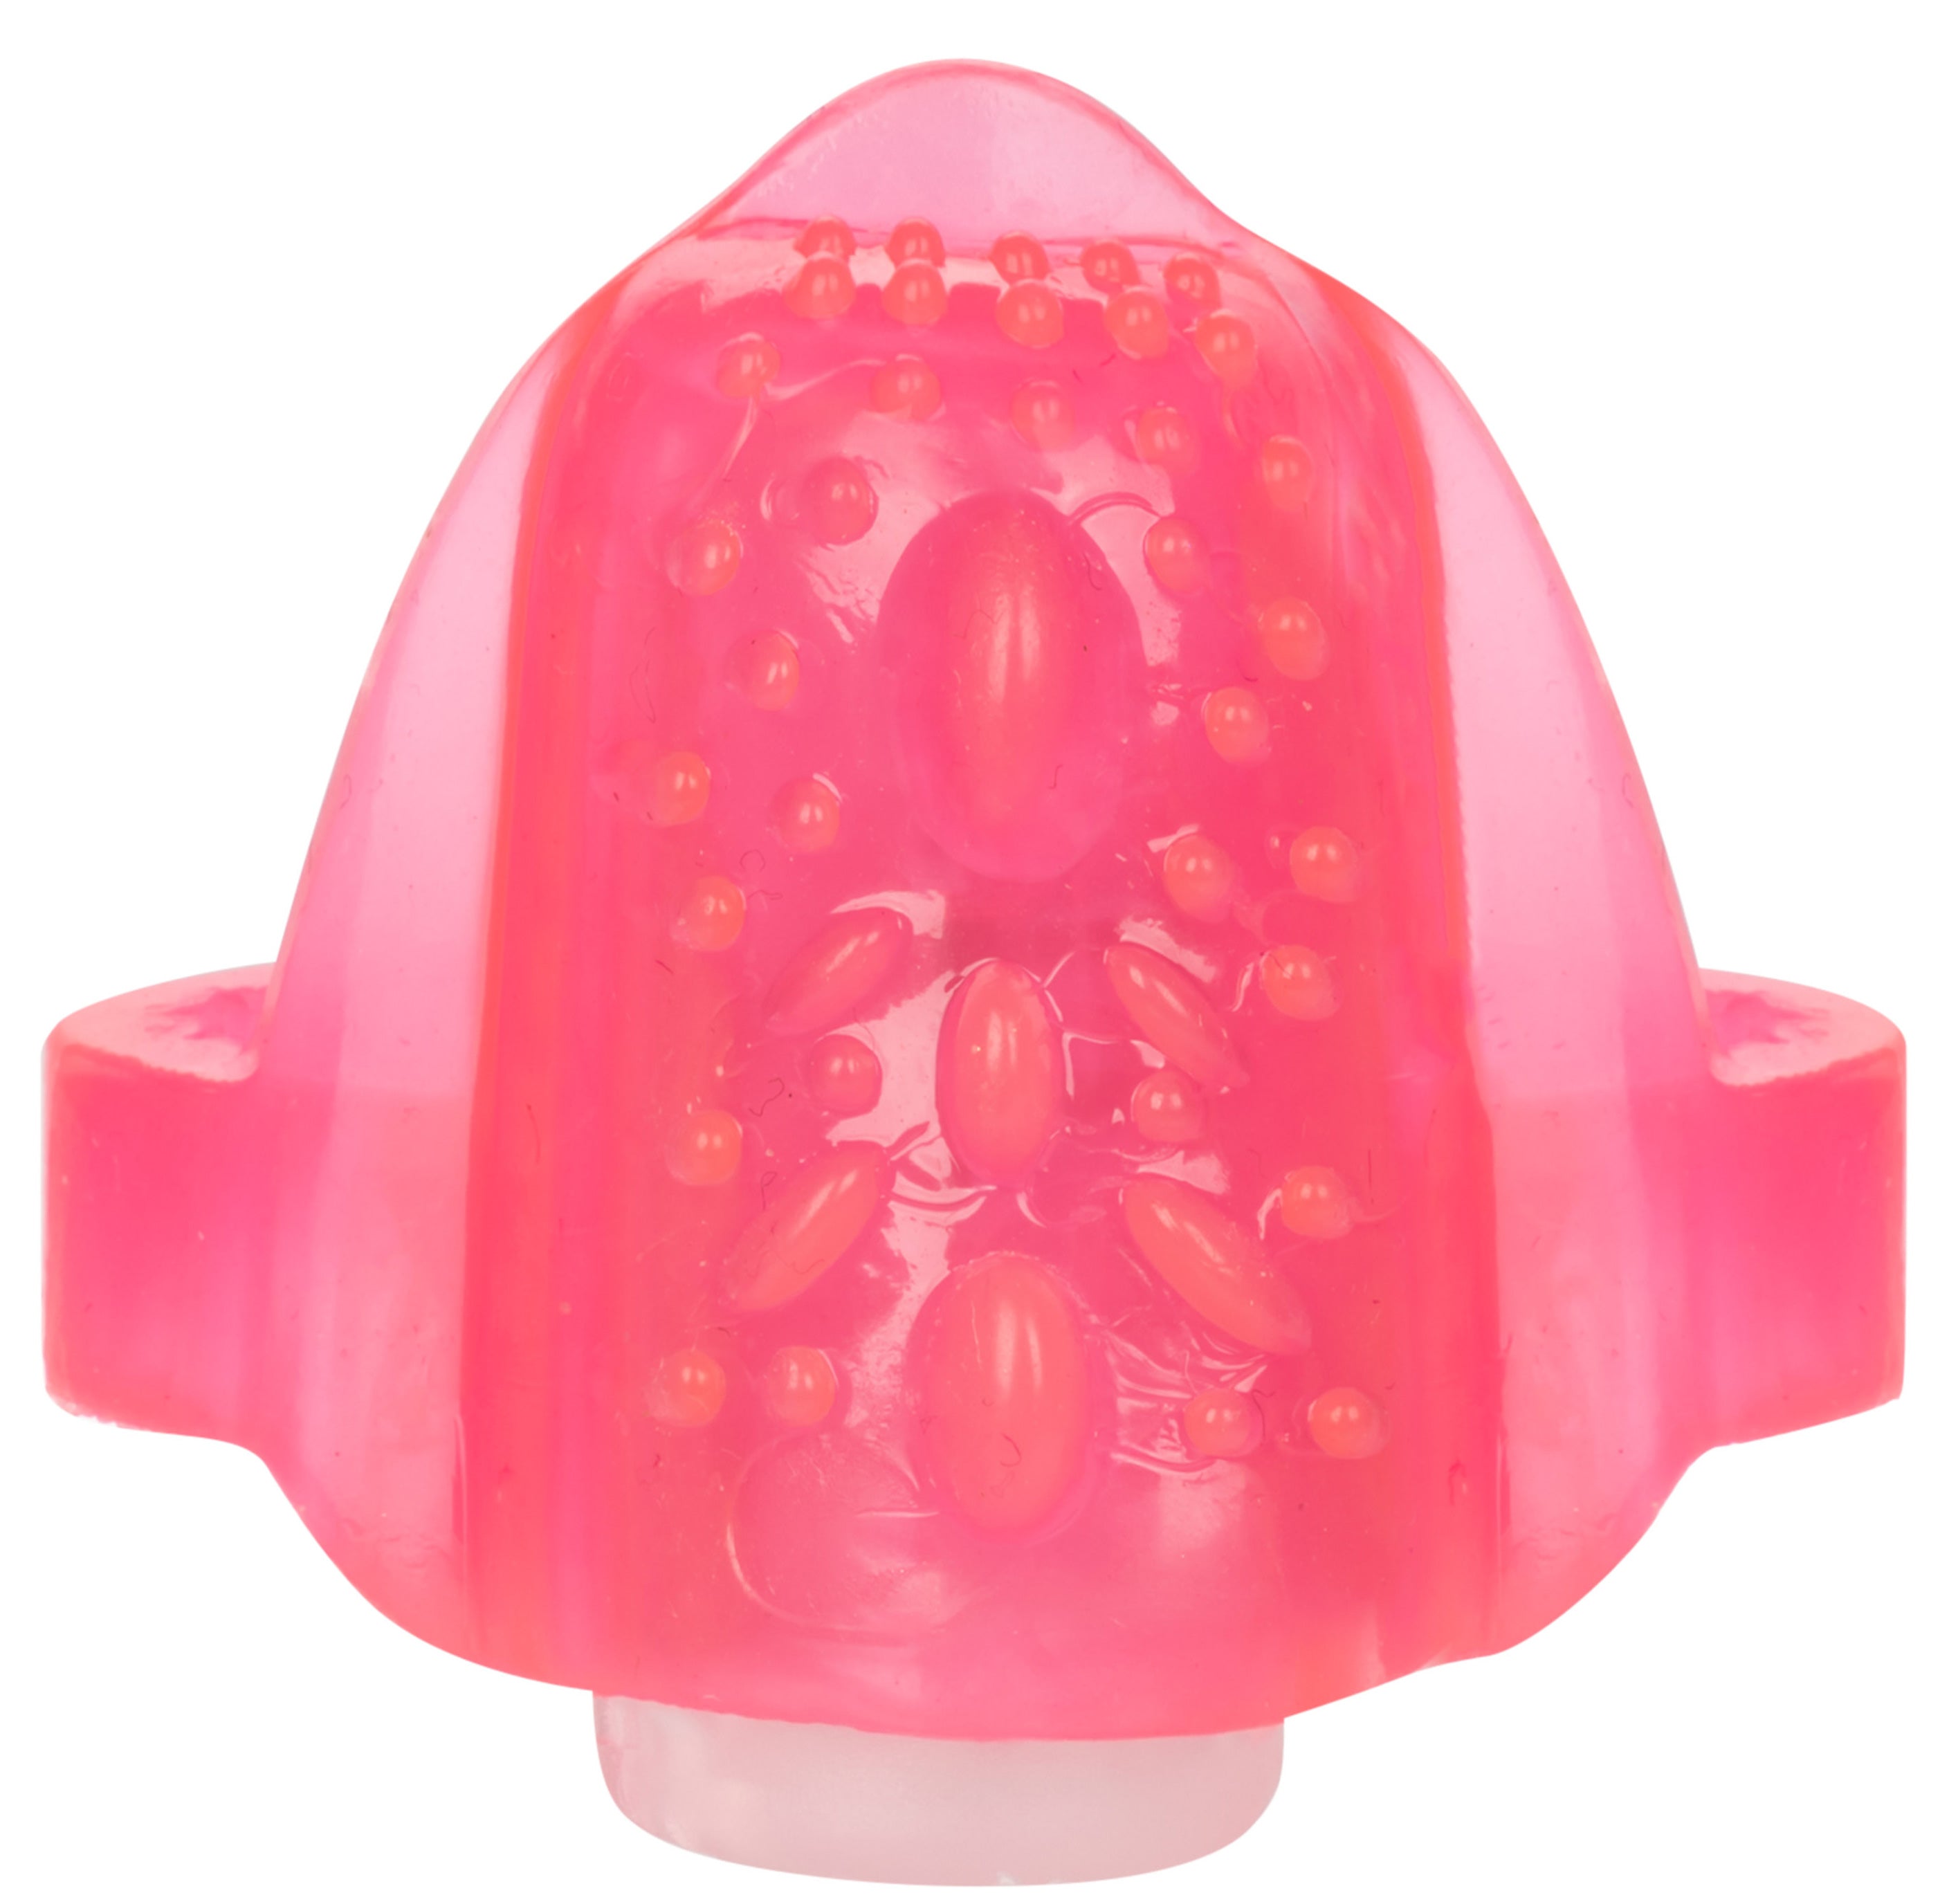 Foil Pack Vibrating Tongue Teaser - Pink SE8000901